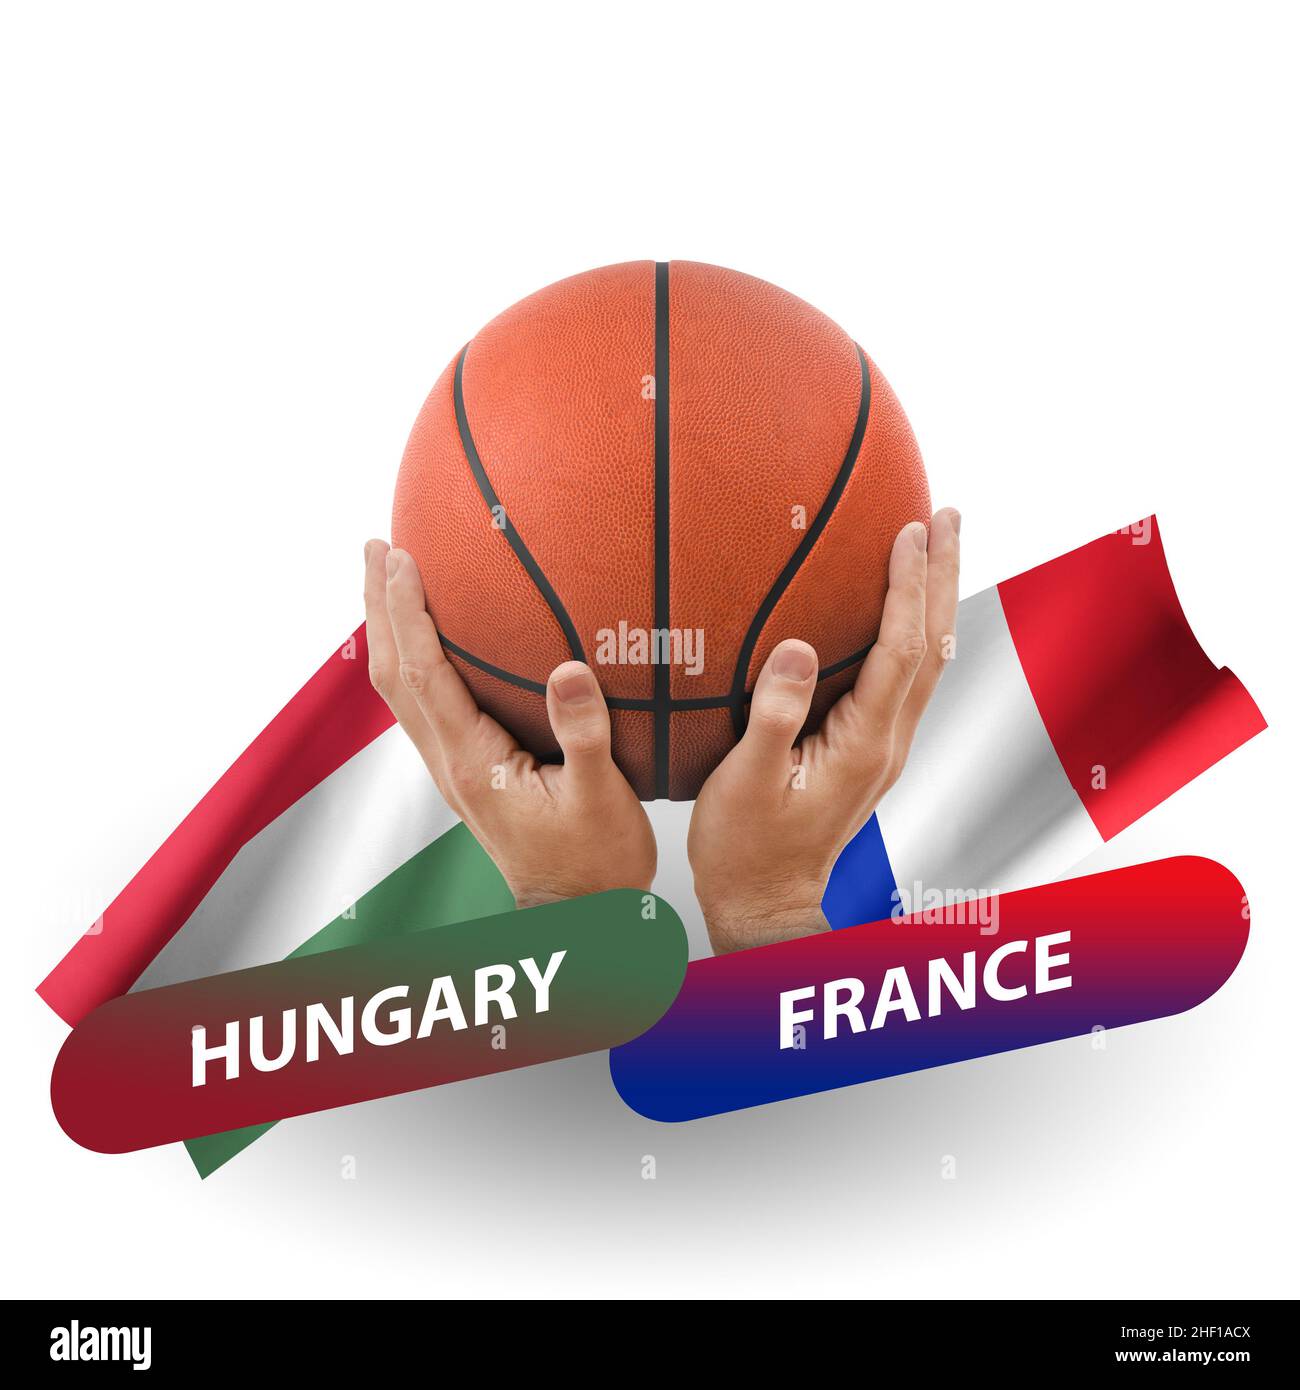 Hongrie vs france Banque de photographies et d'images à haute résolution -  Alamy